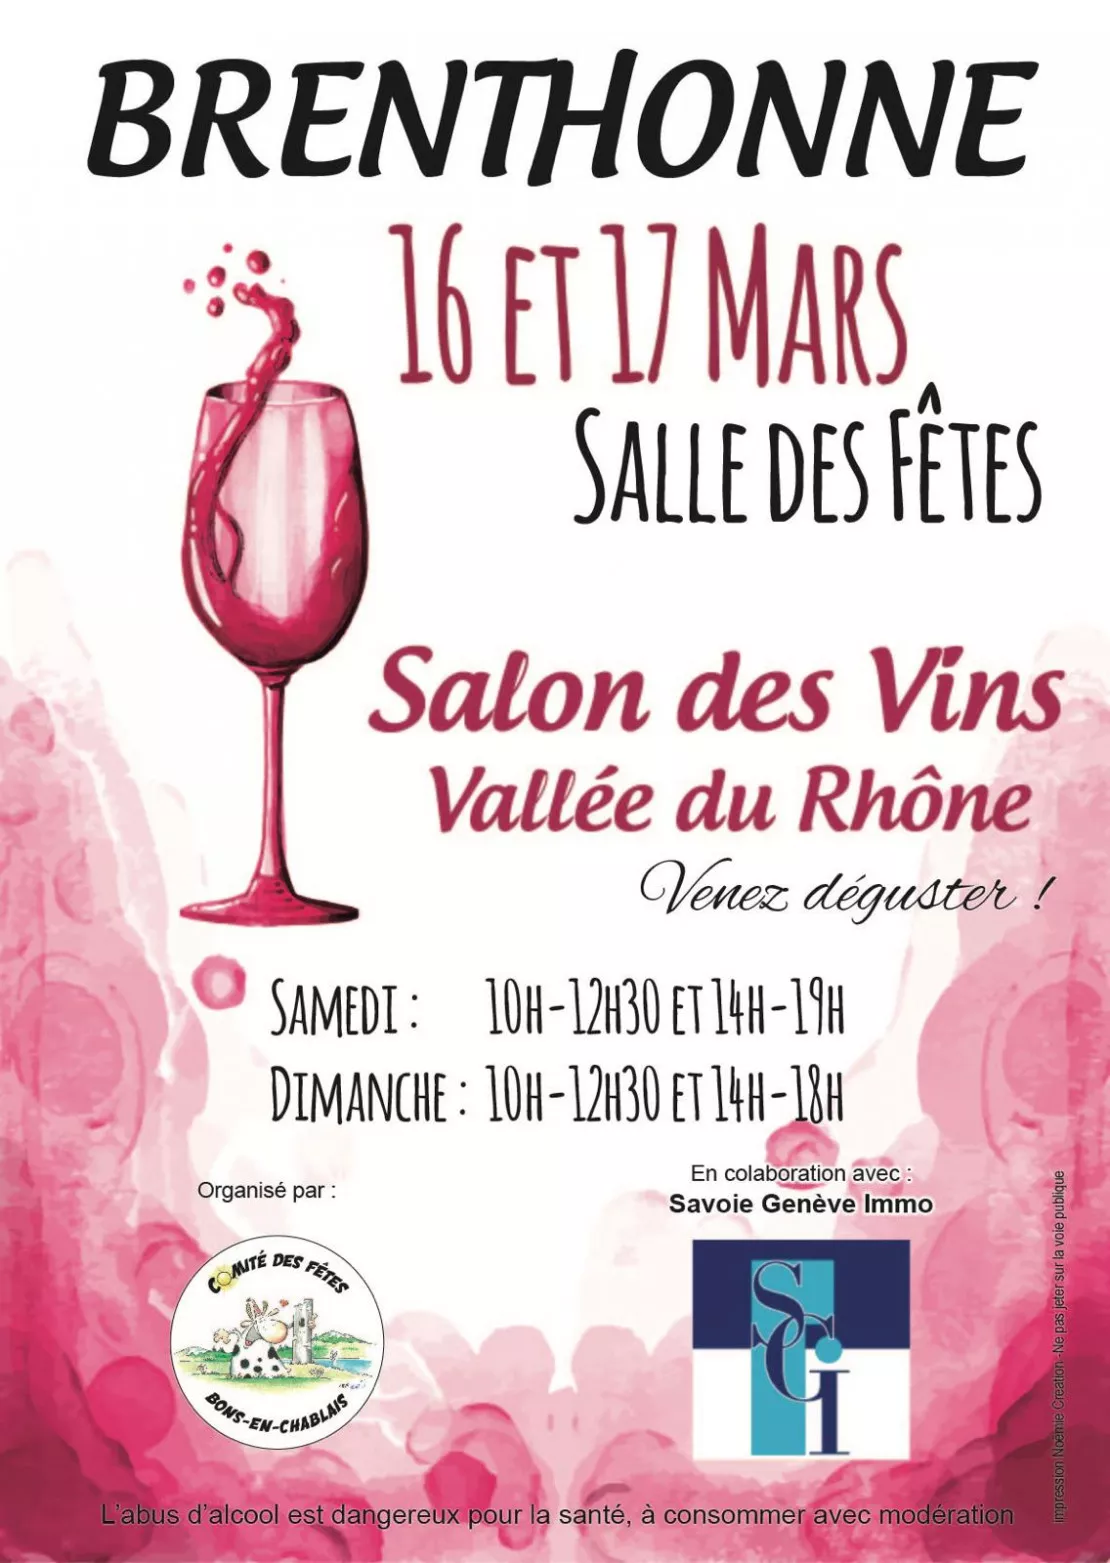 Brenthonne - salon des vins de la Vallée du Rhône